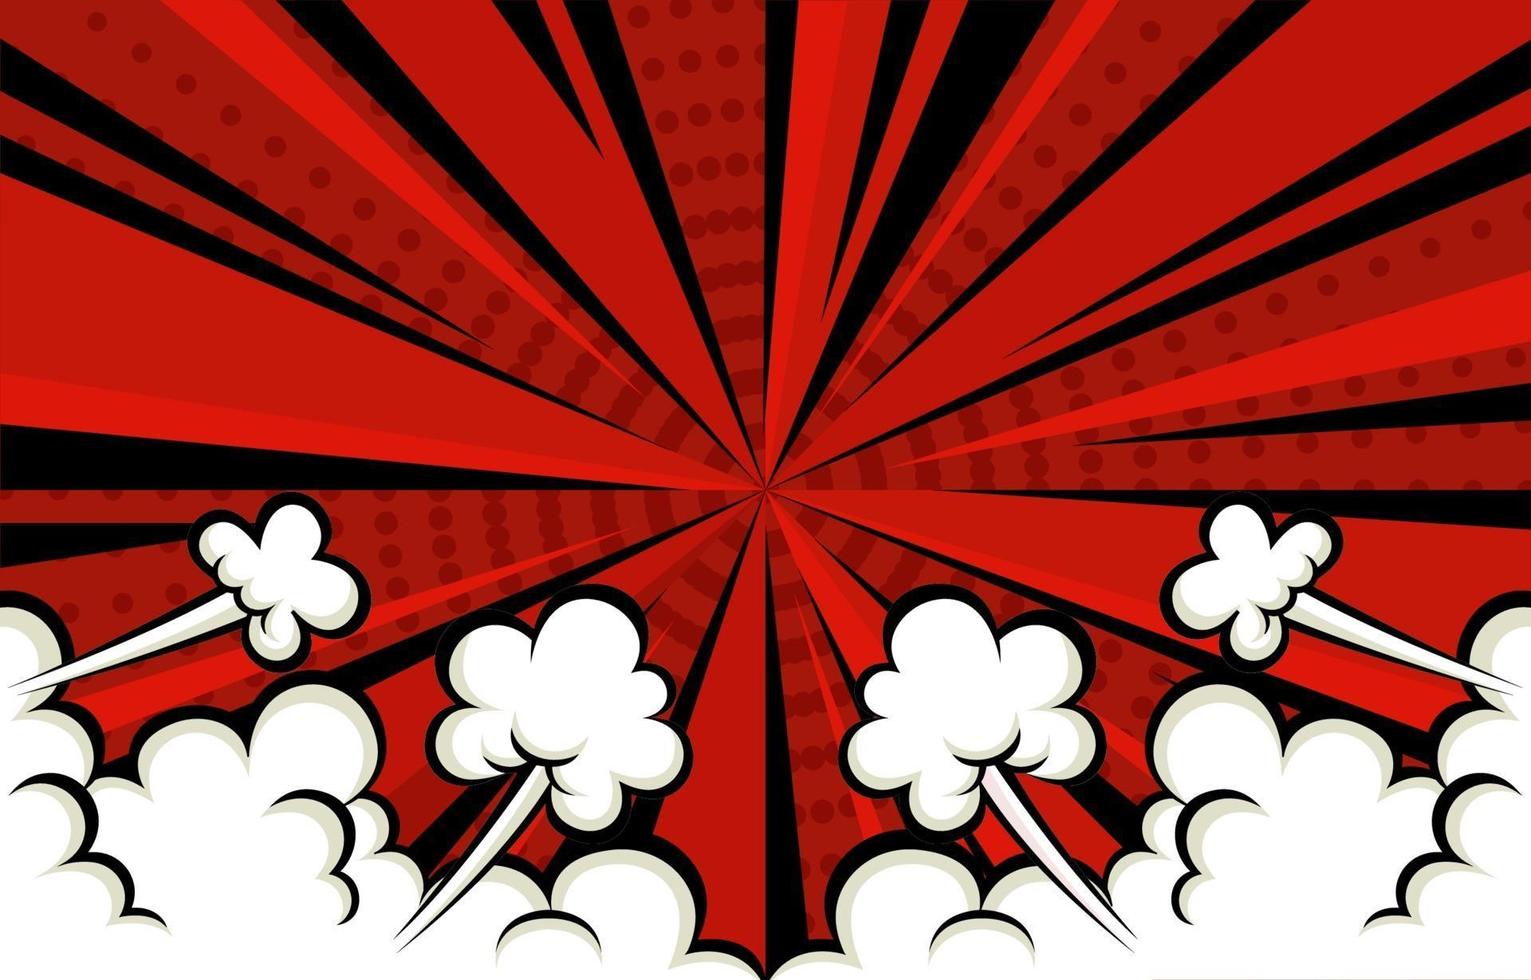 sfondo rosso stile fumetto con la nuvola vettore